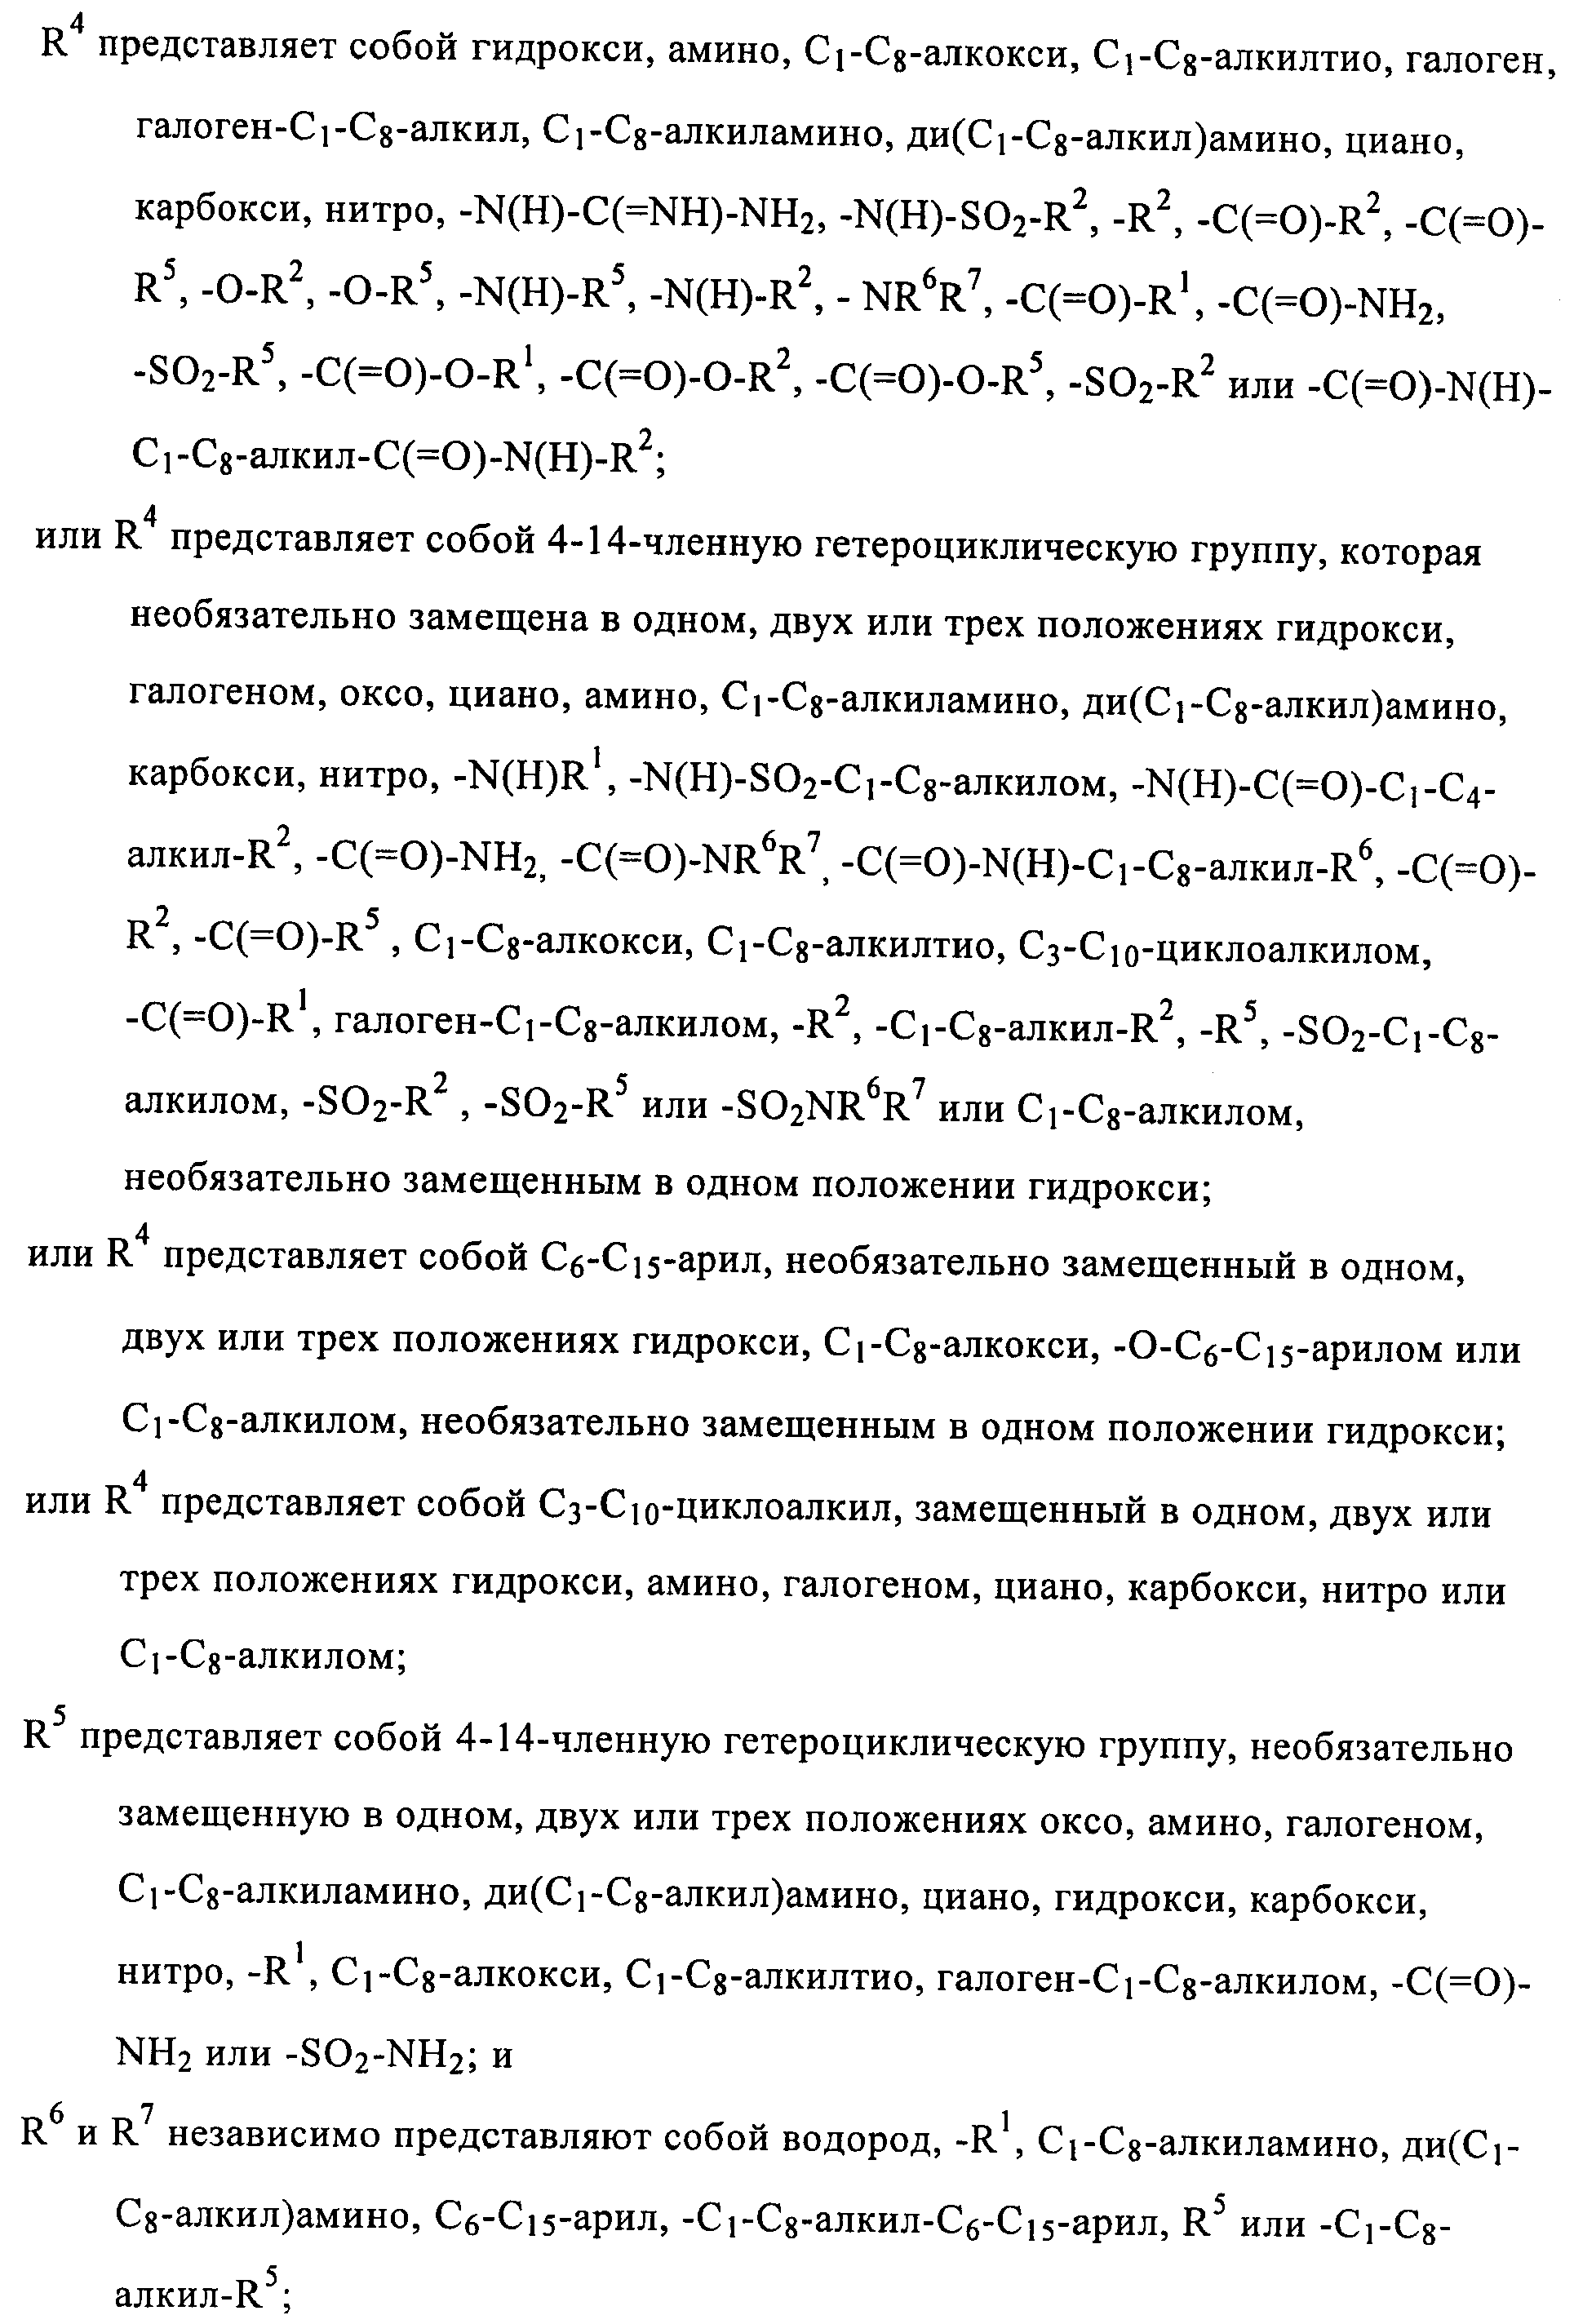 ПРОИЗВОДНЫЕ ПИРИМИДИНА В КАЧЕСТВЕ ИНГИБИТОРОВ ALK-5